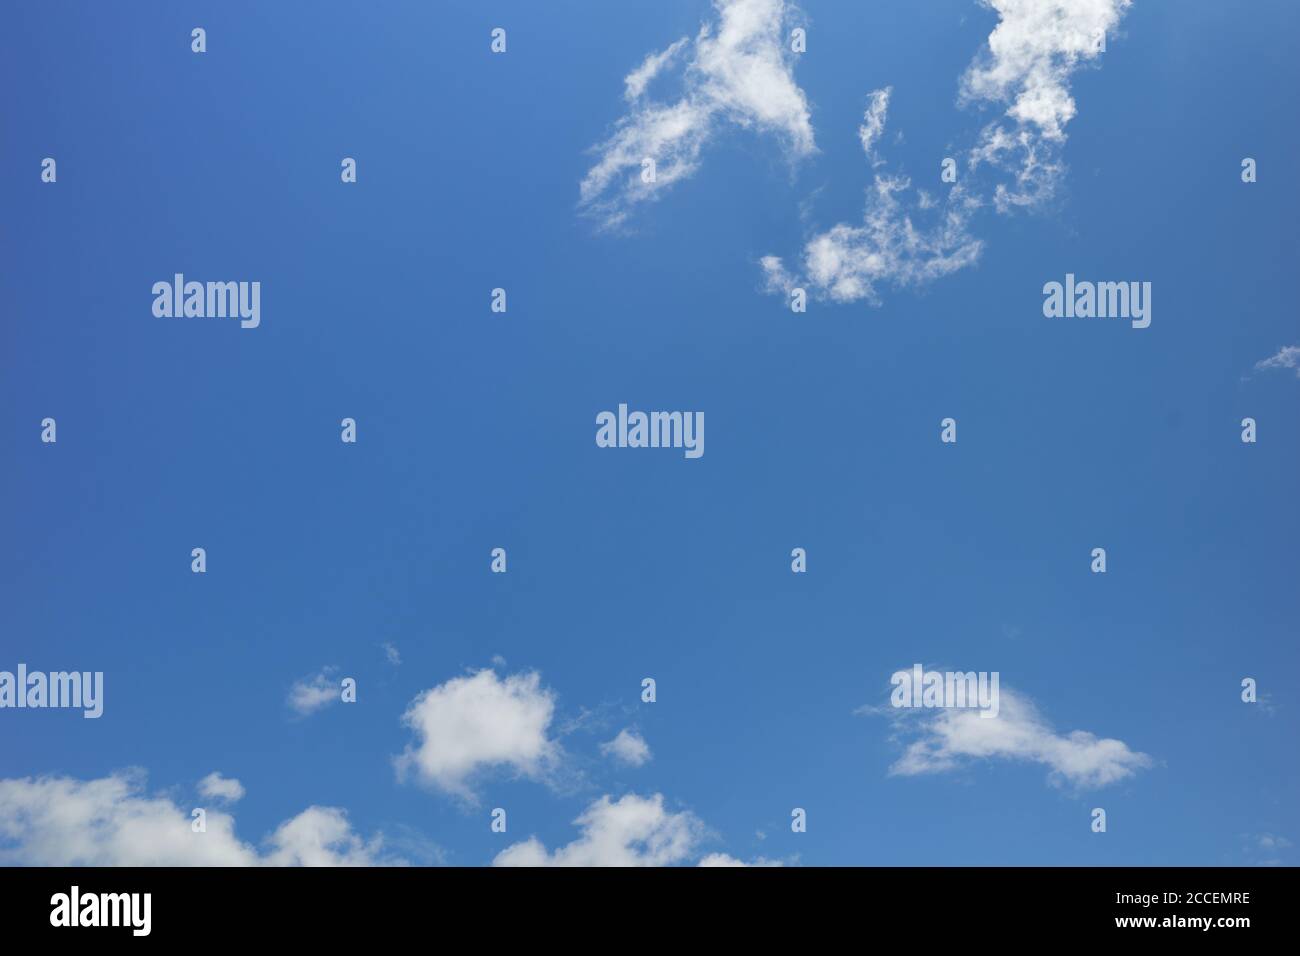 Zerrissene weiße Wolken am friedlichen blauen Himmel. Durchsichtiger blauer Himmel. Hintergrund für Vorhersage und Meteorologie Illustration Stockfoto